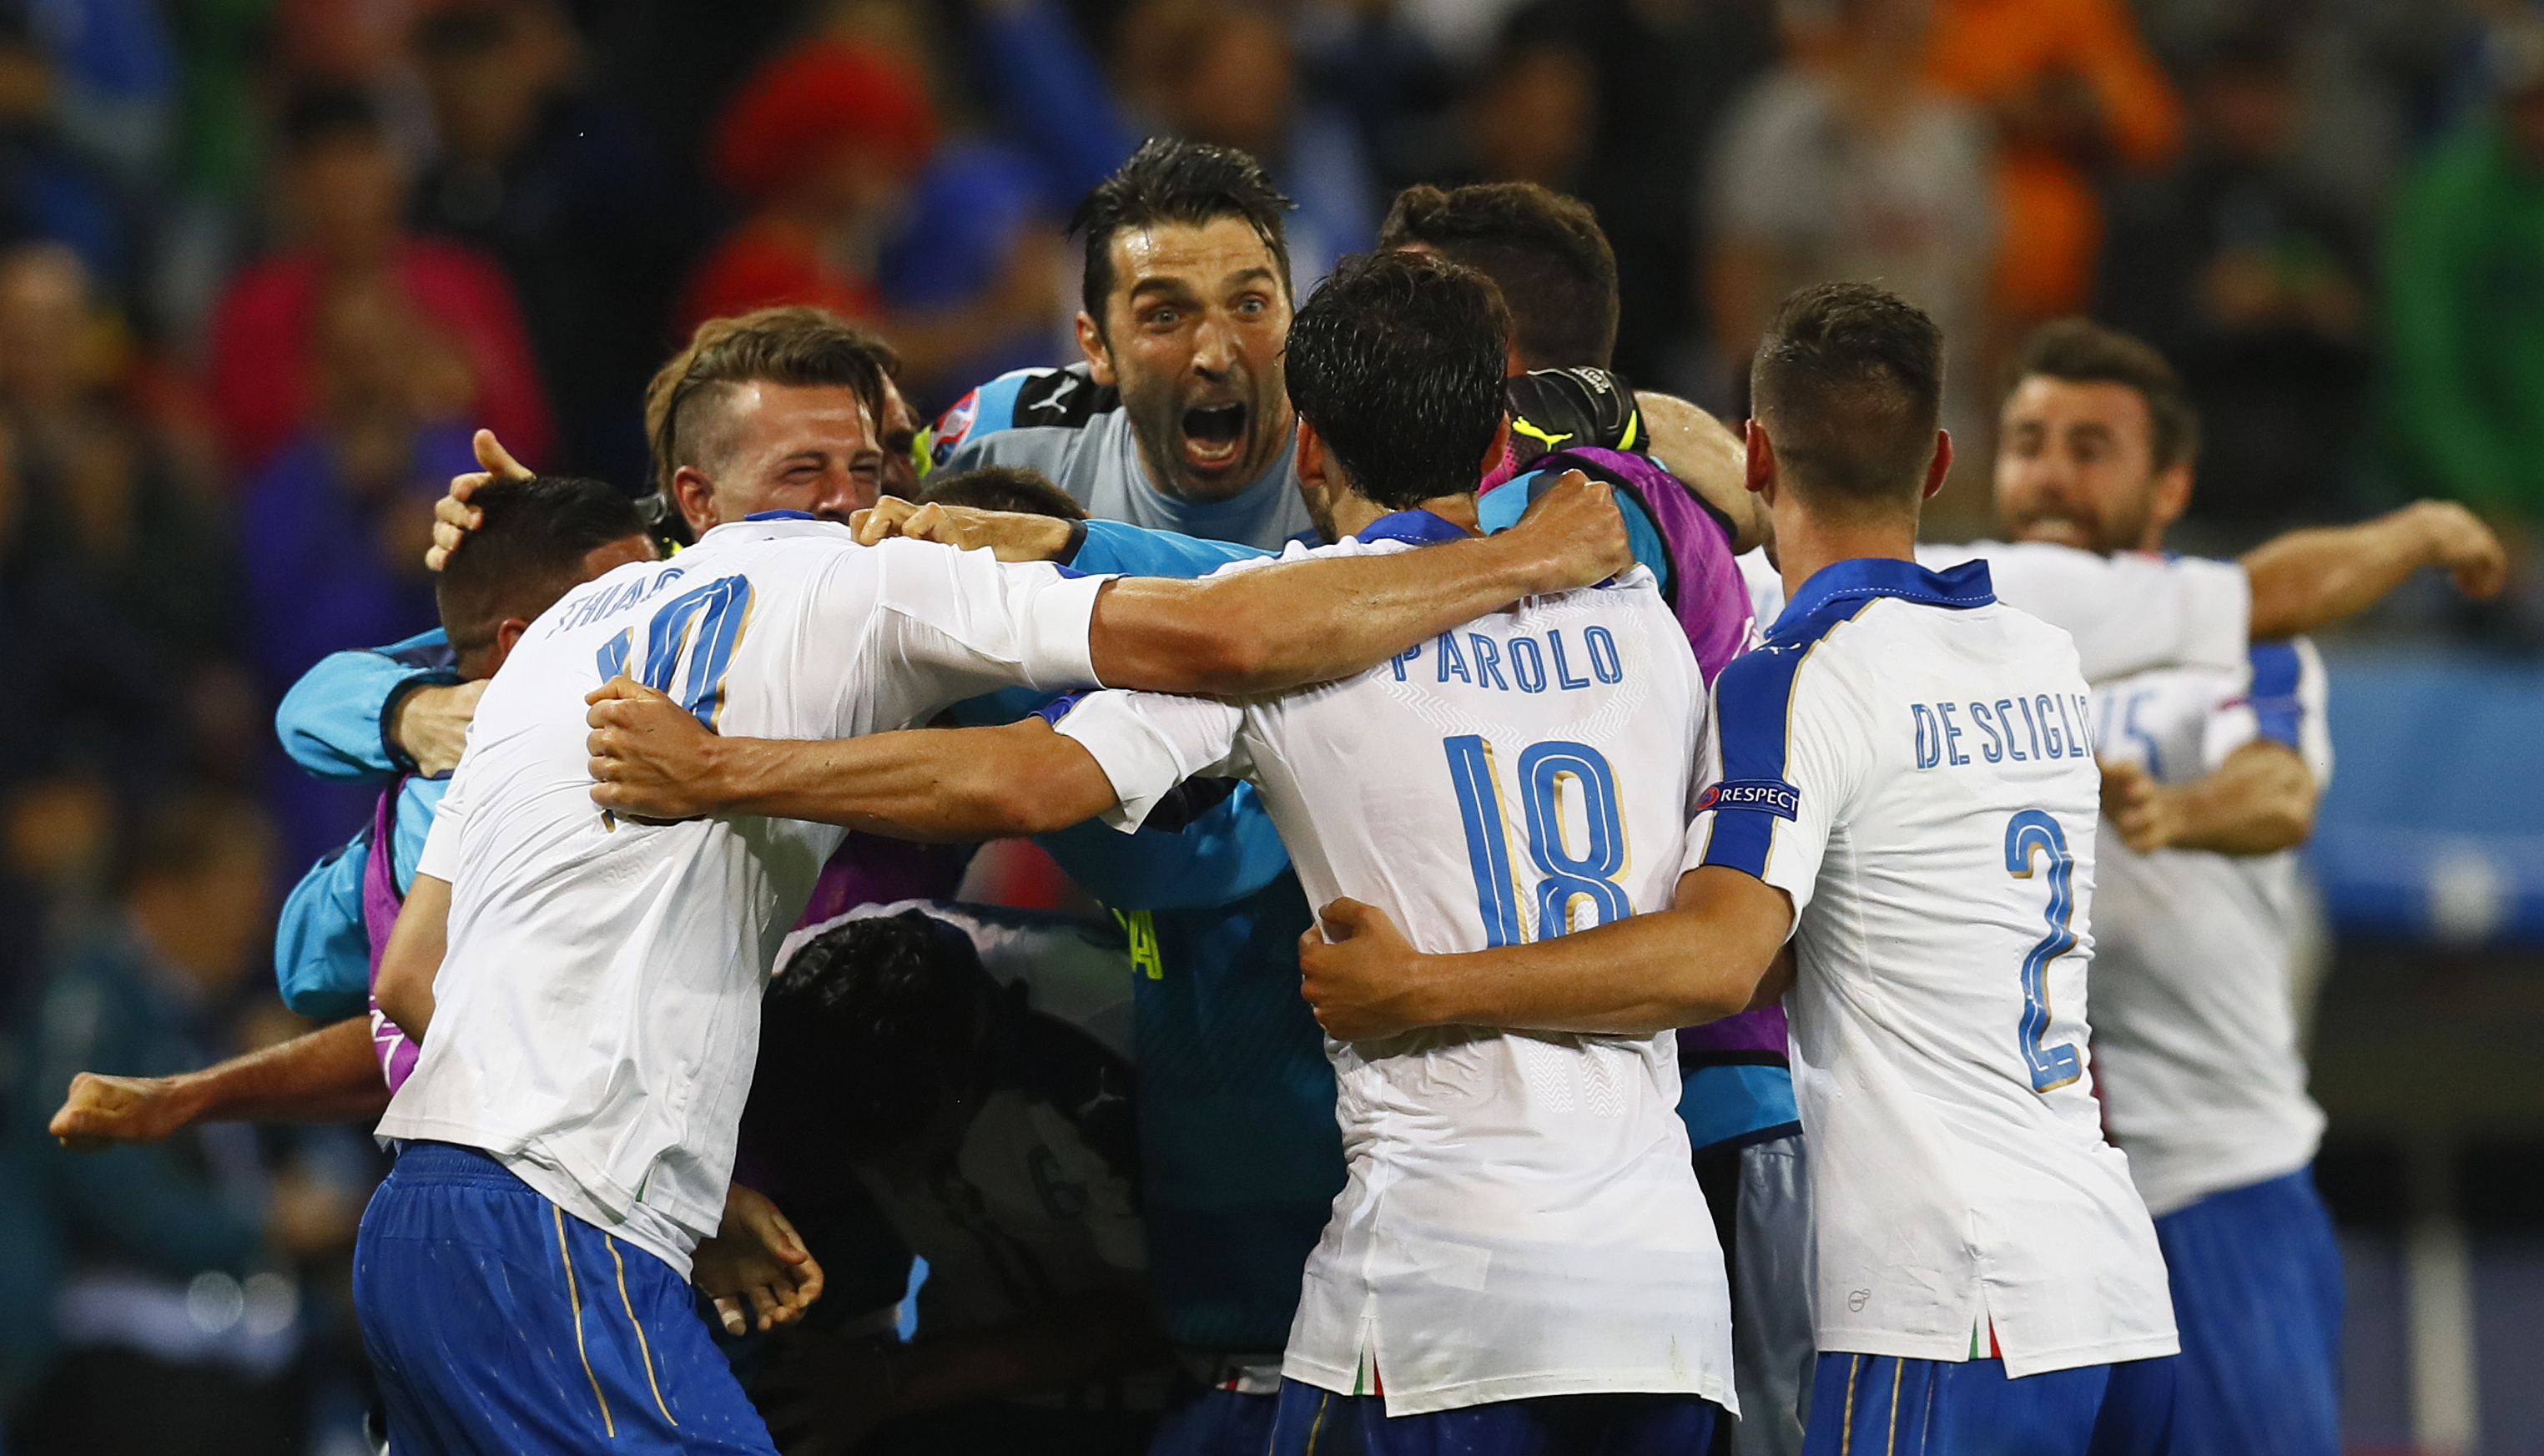 La selección italiana venció 2-0 a Bélgica colocandose como líder solitaria del grupo E